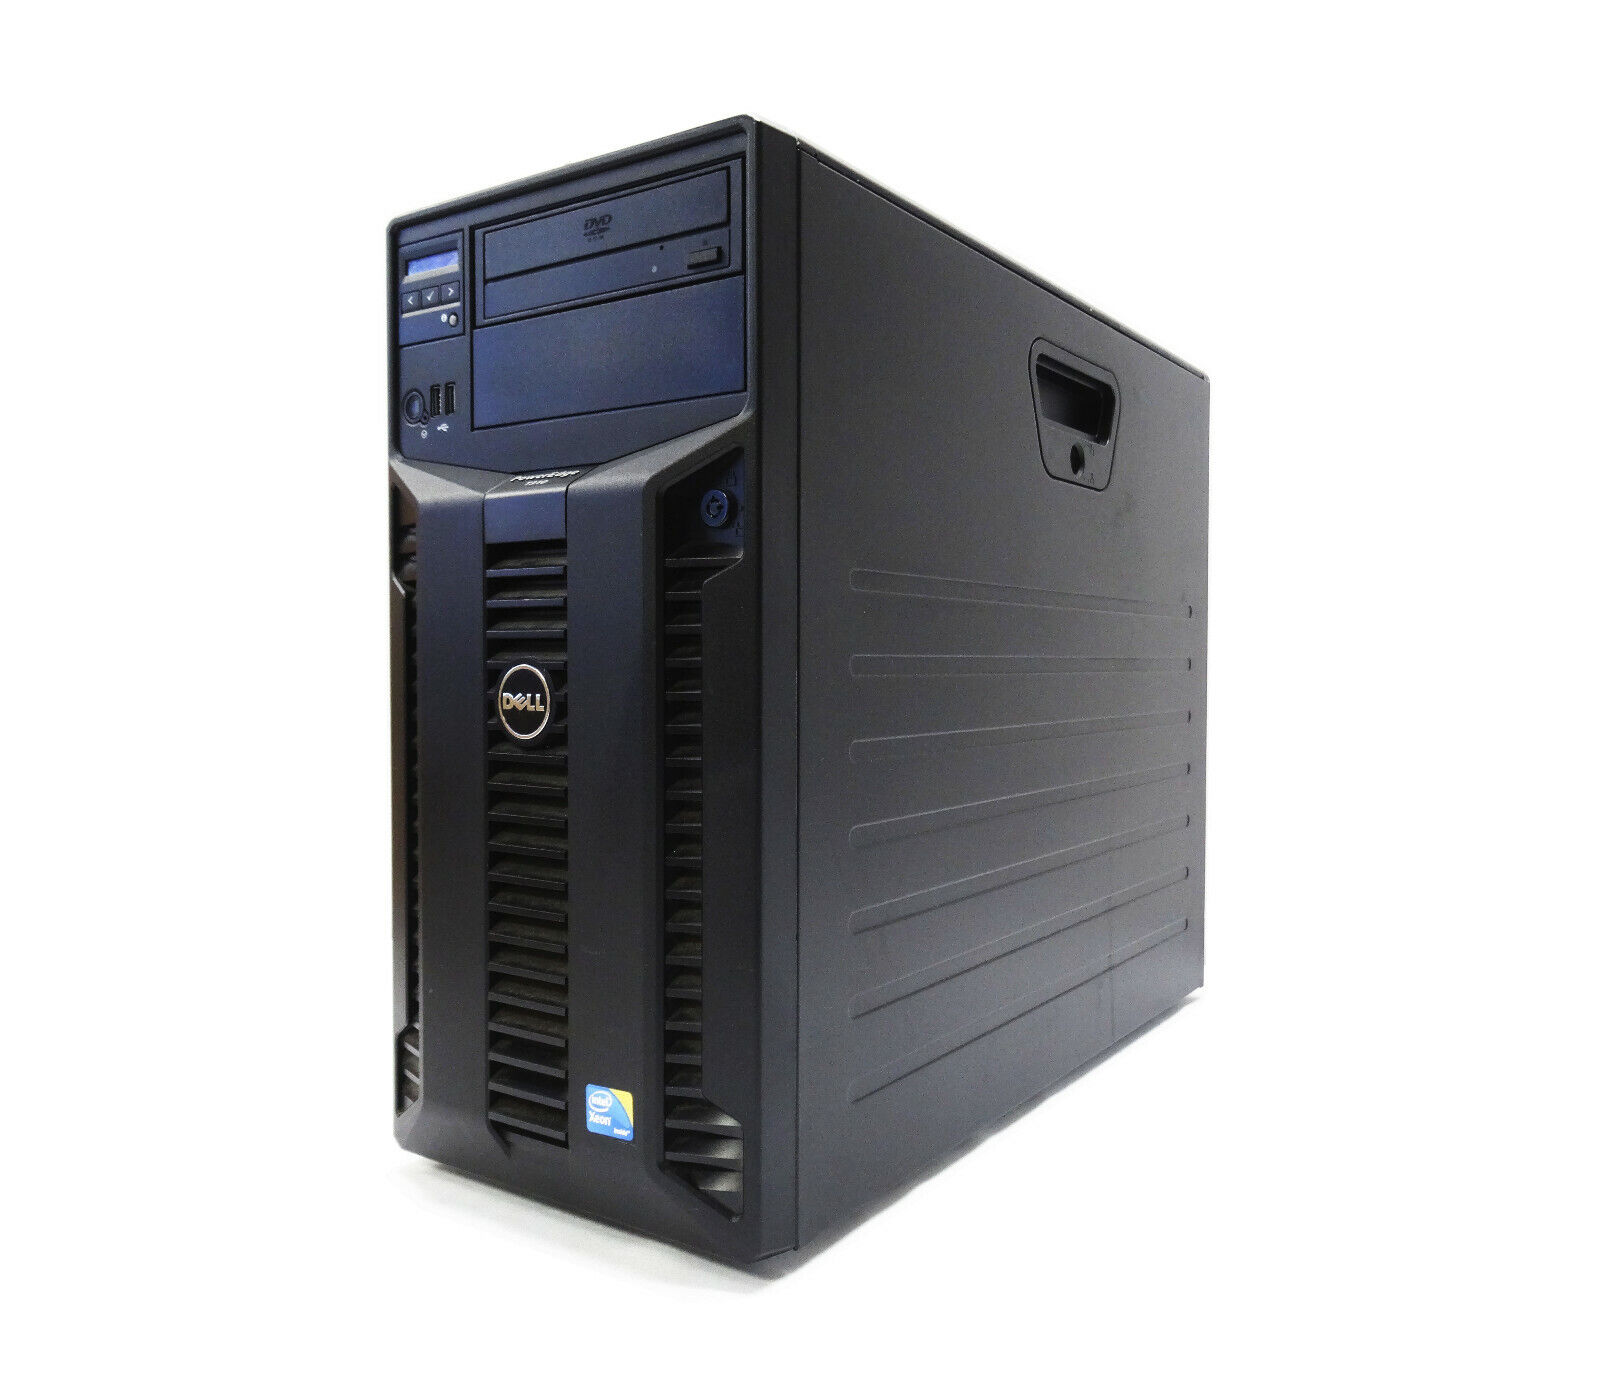 Dell Poweredge T310 Server Xeon x3430 2.40GHz 24GB Ram 2TB DVD Perc 6li 2x 400w